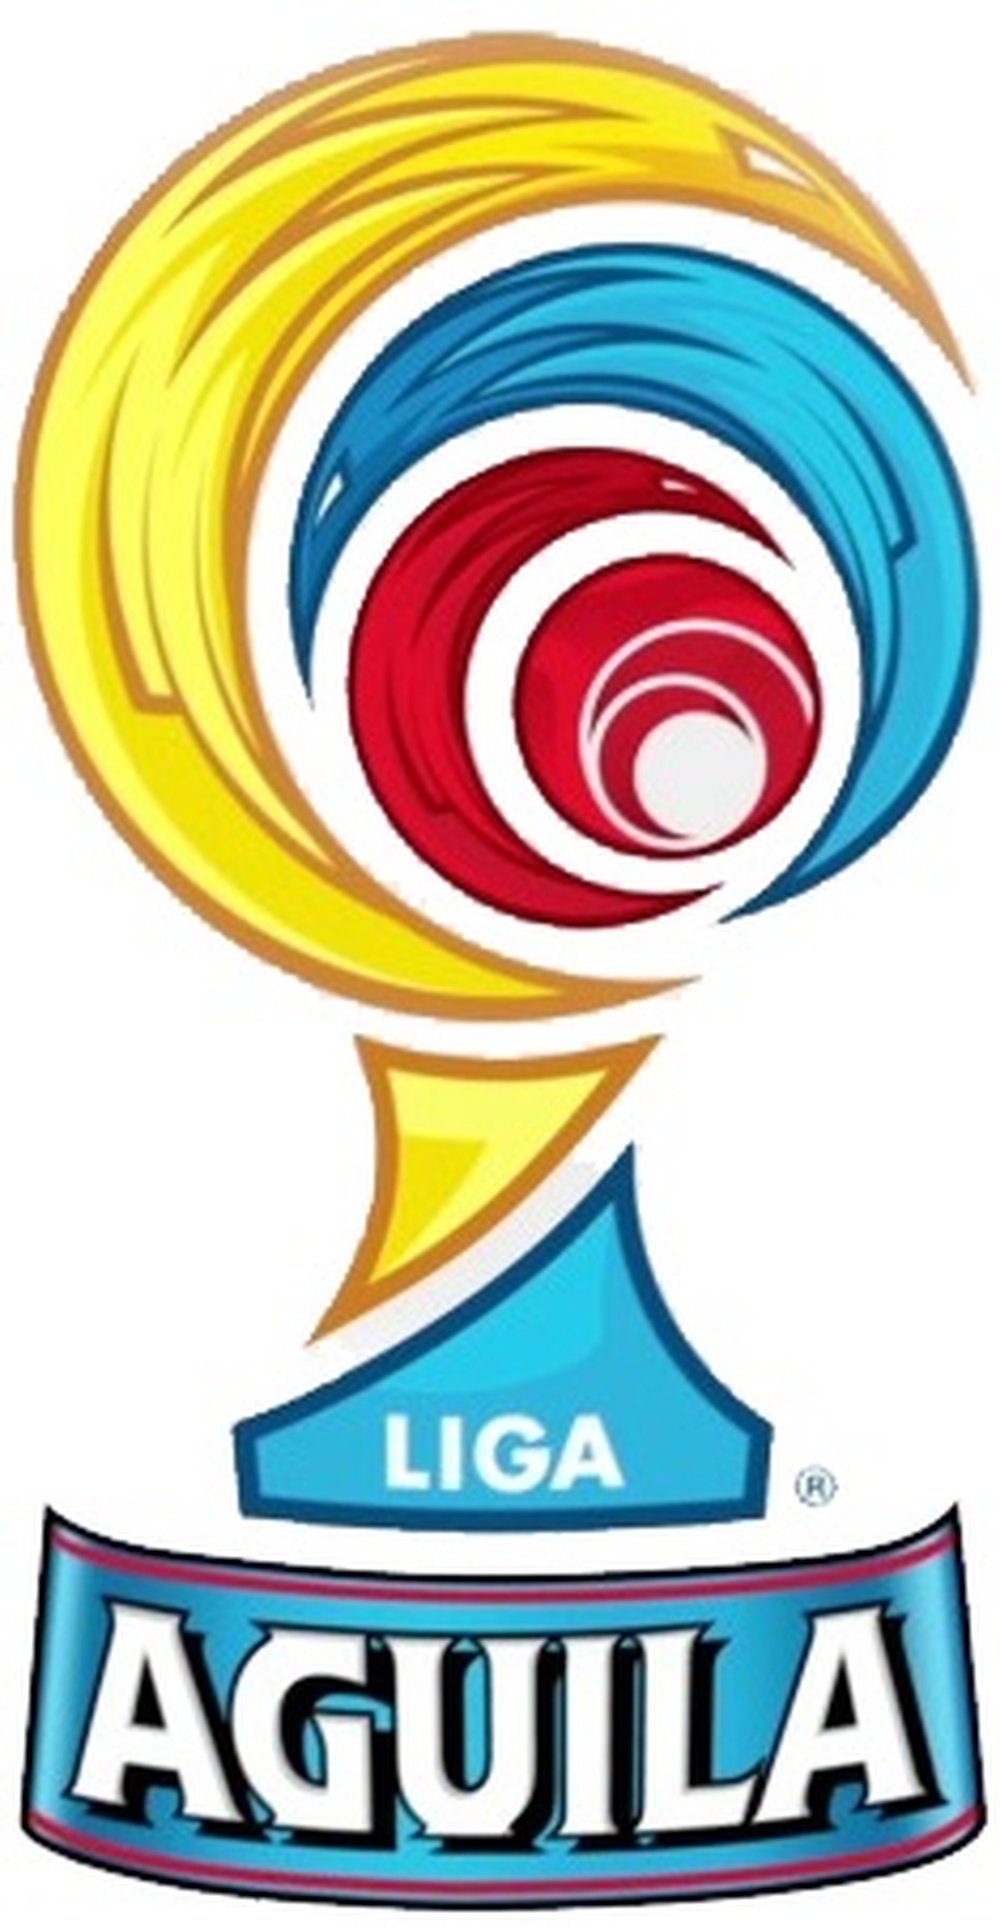 Logo Liga Águila